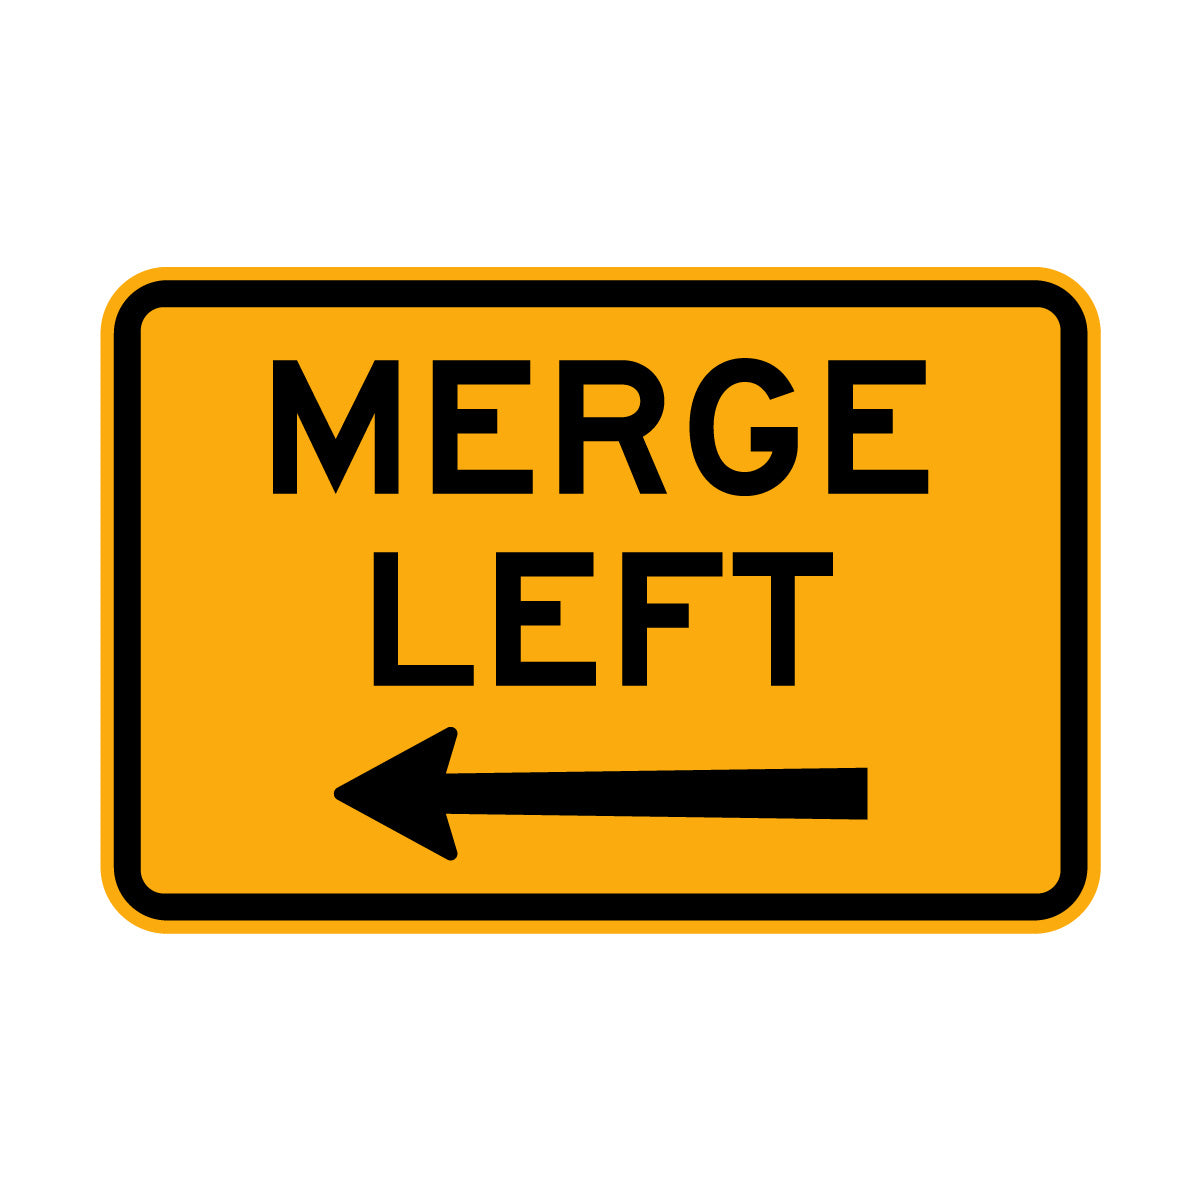 Warning: Merge Sign